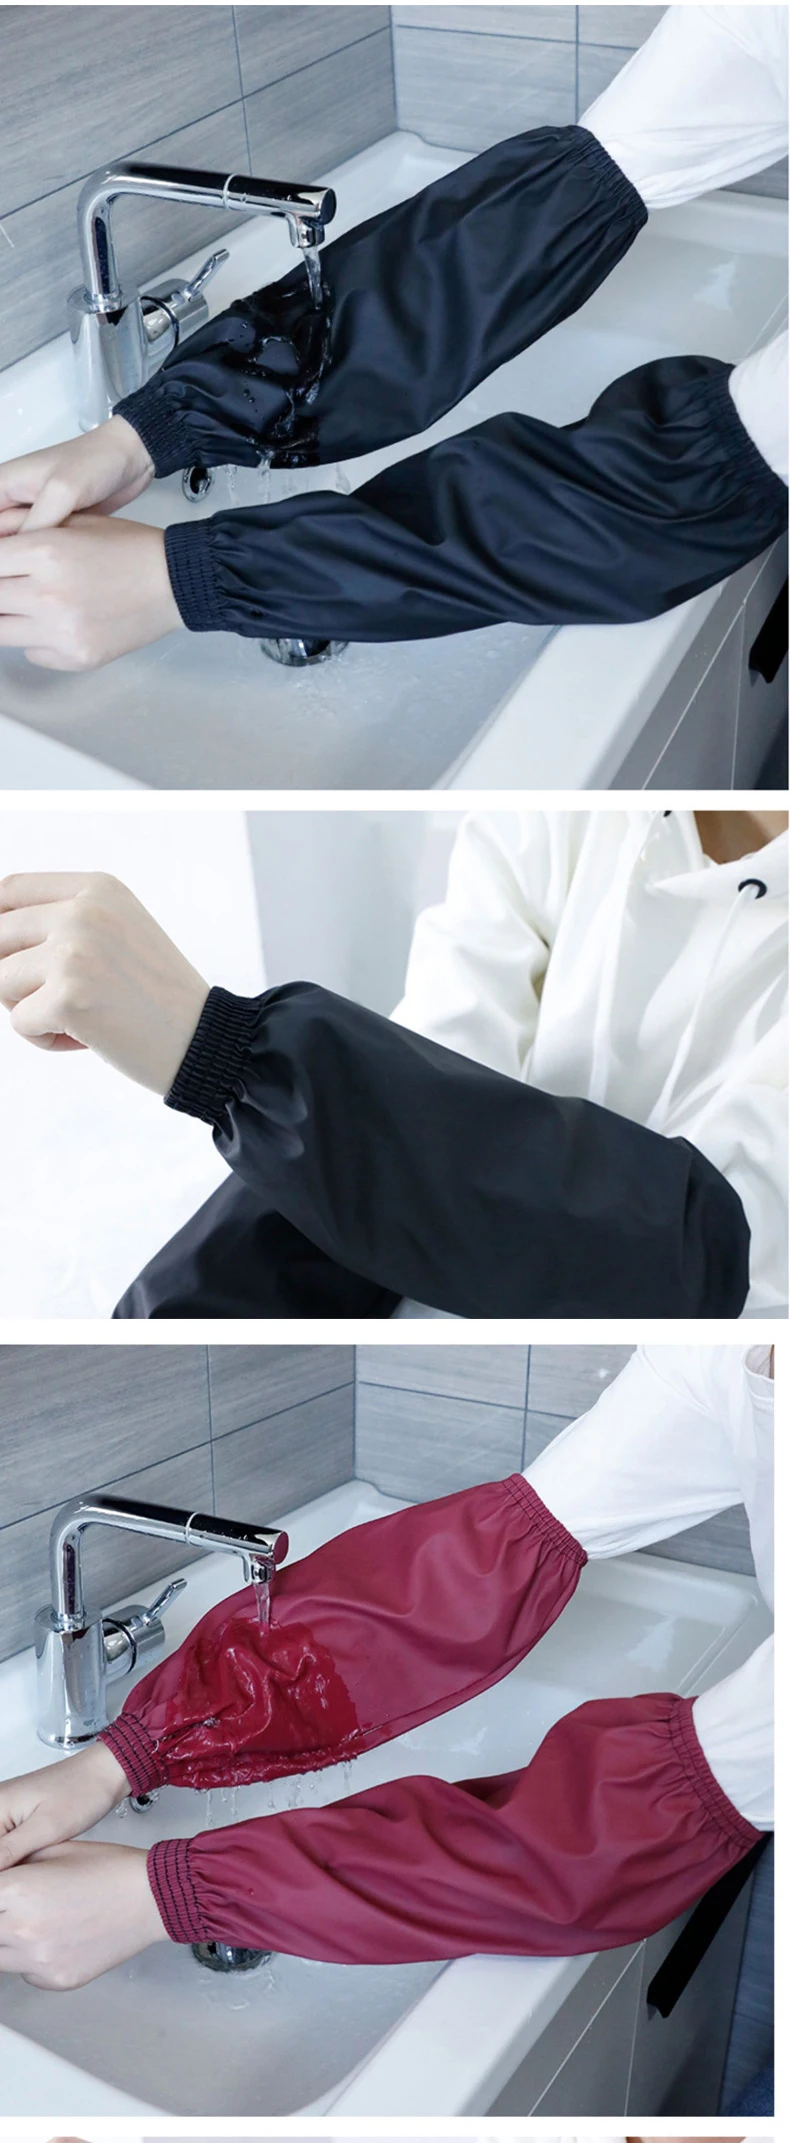 זוג רצועות חסינות מים להגנה על הזרועות מלכלוך ורטיבות במטבח ובעבודה